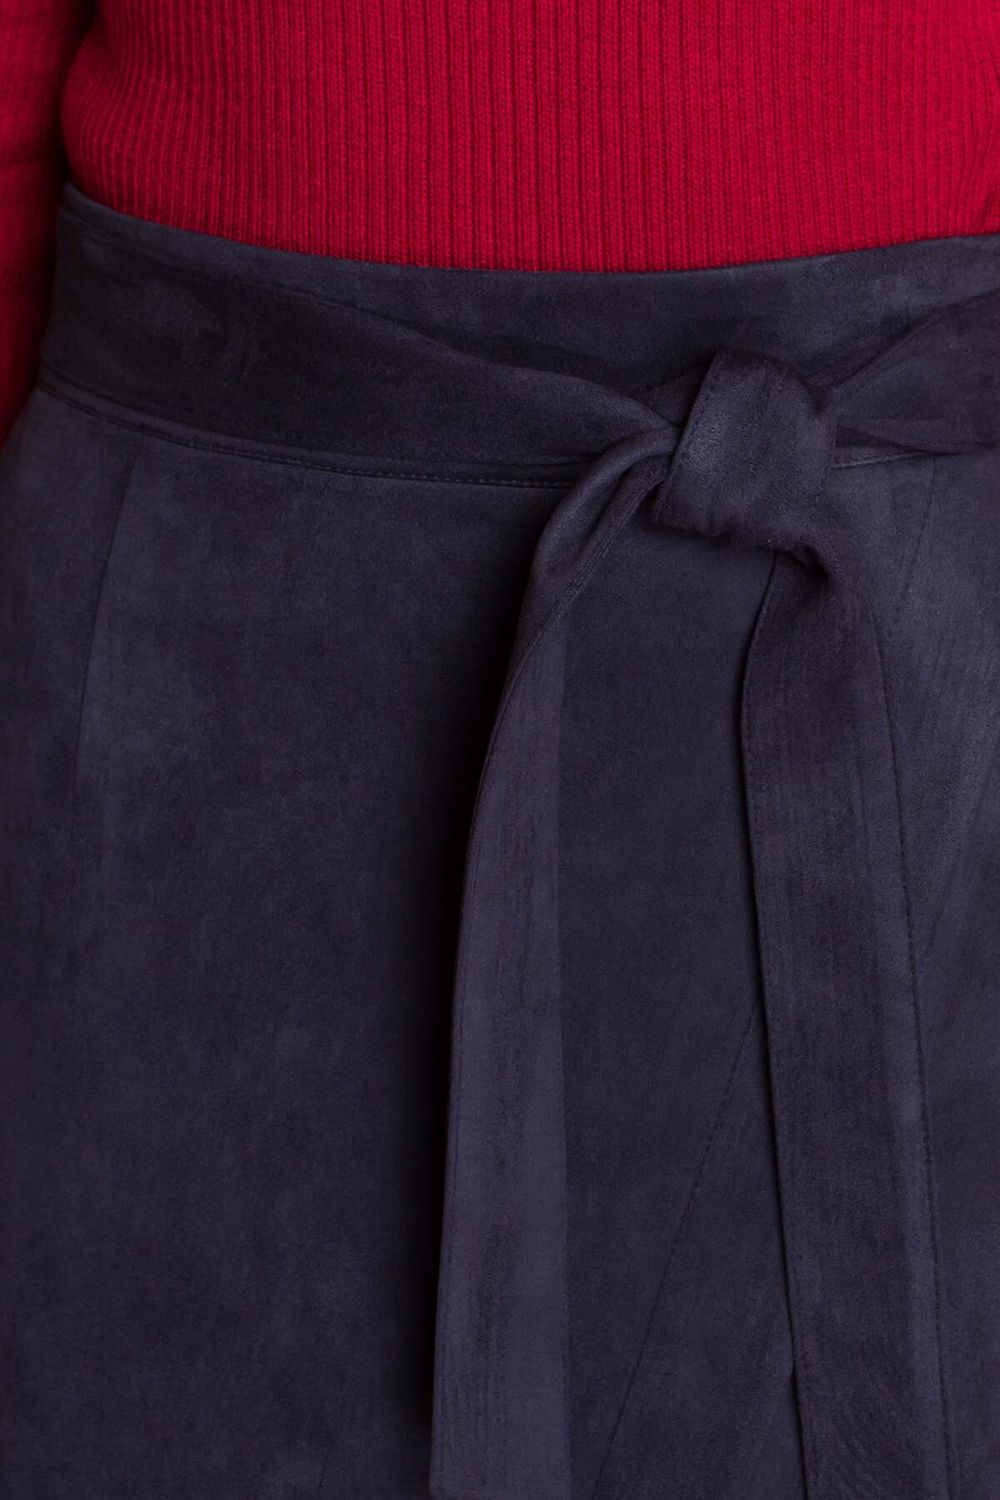 Замшевая юбка карандаш с поясом синяя - фото